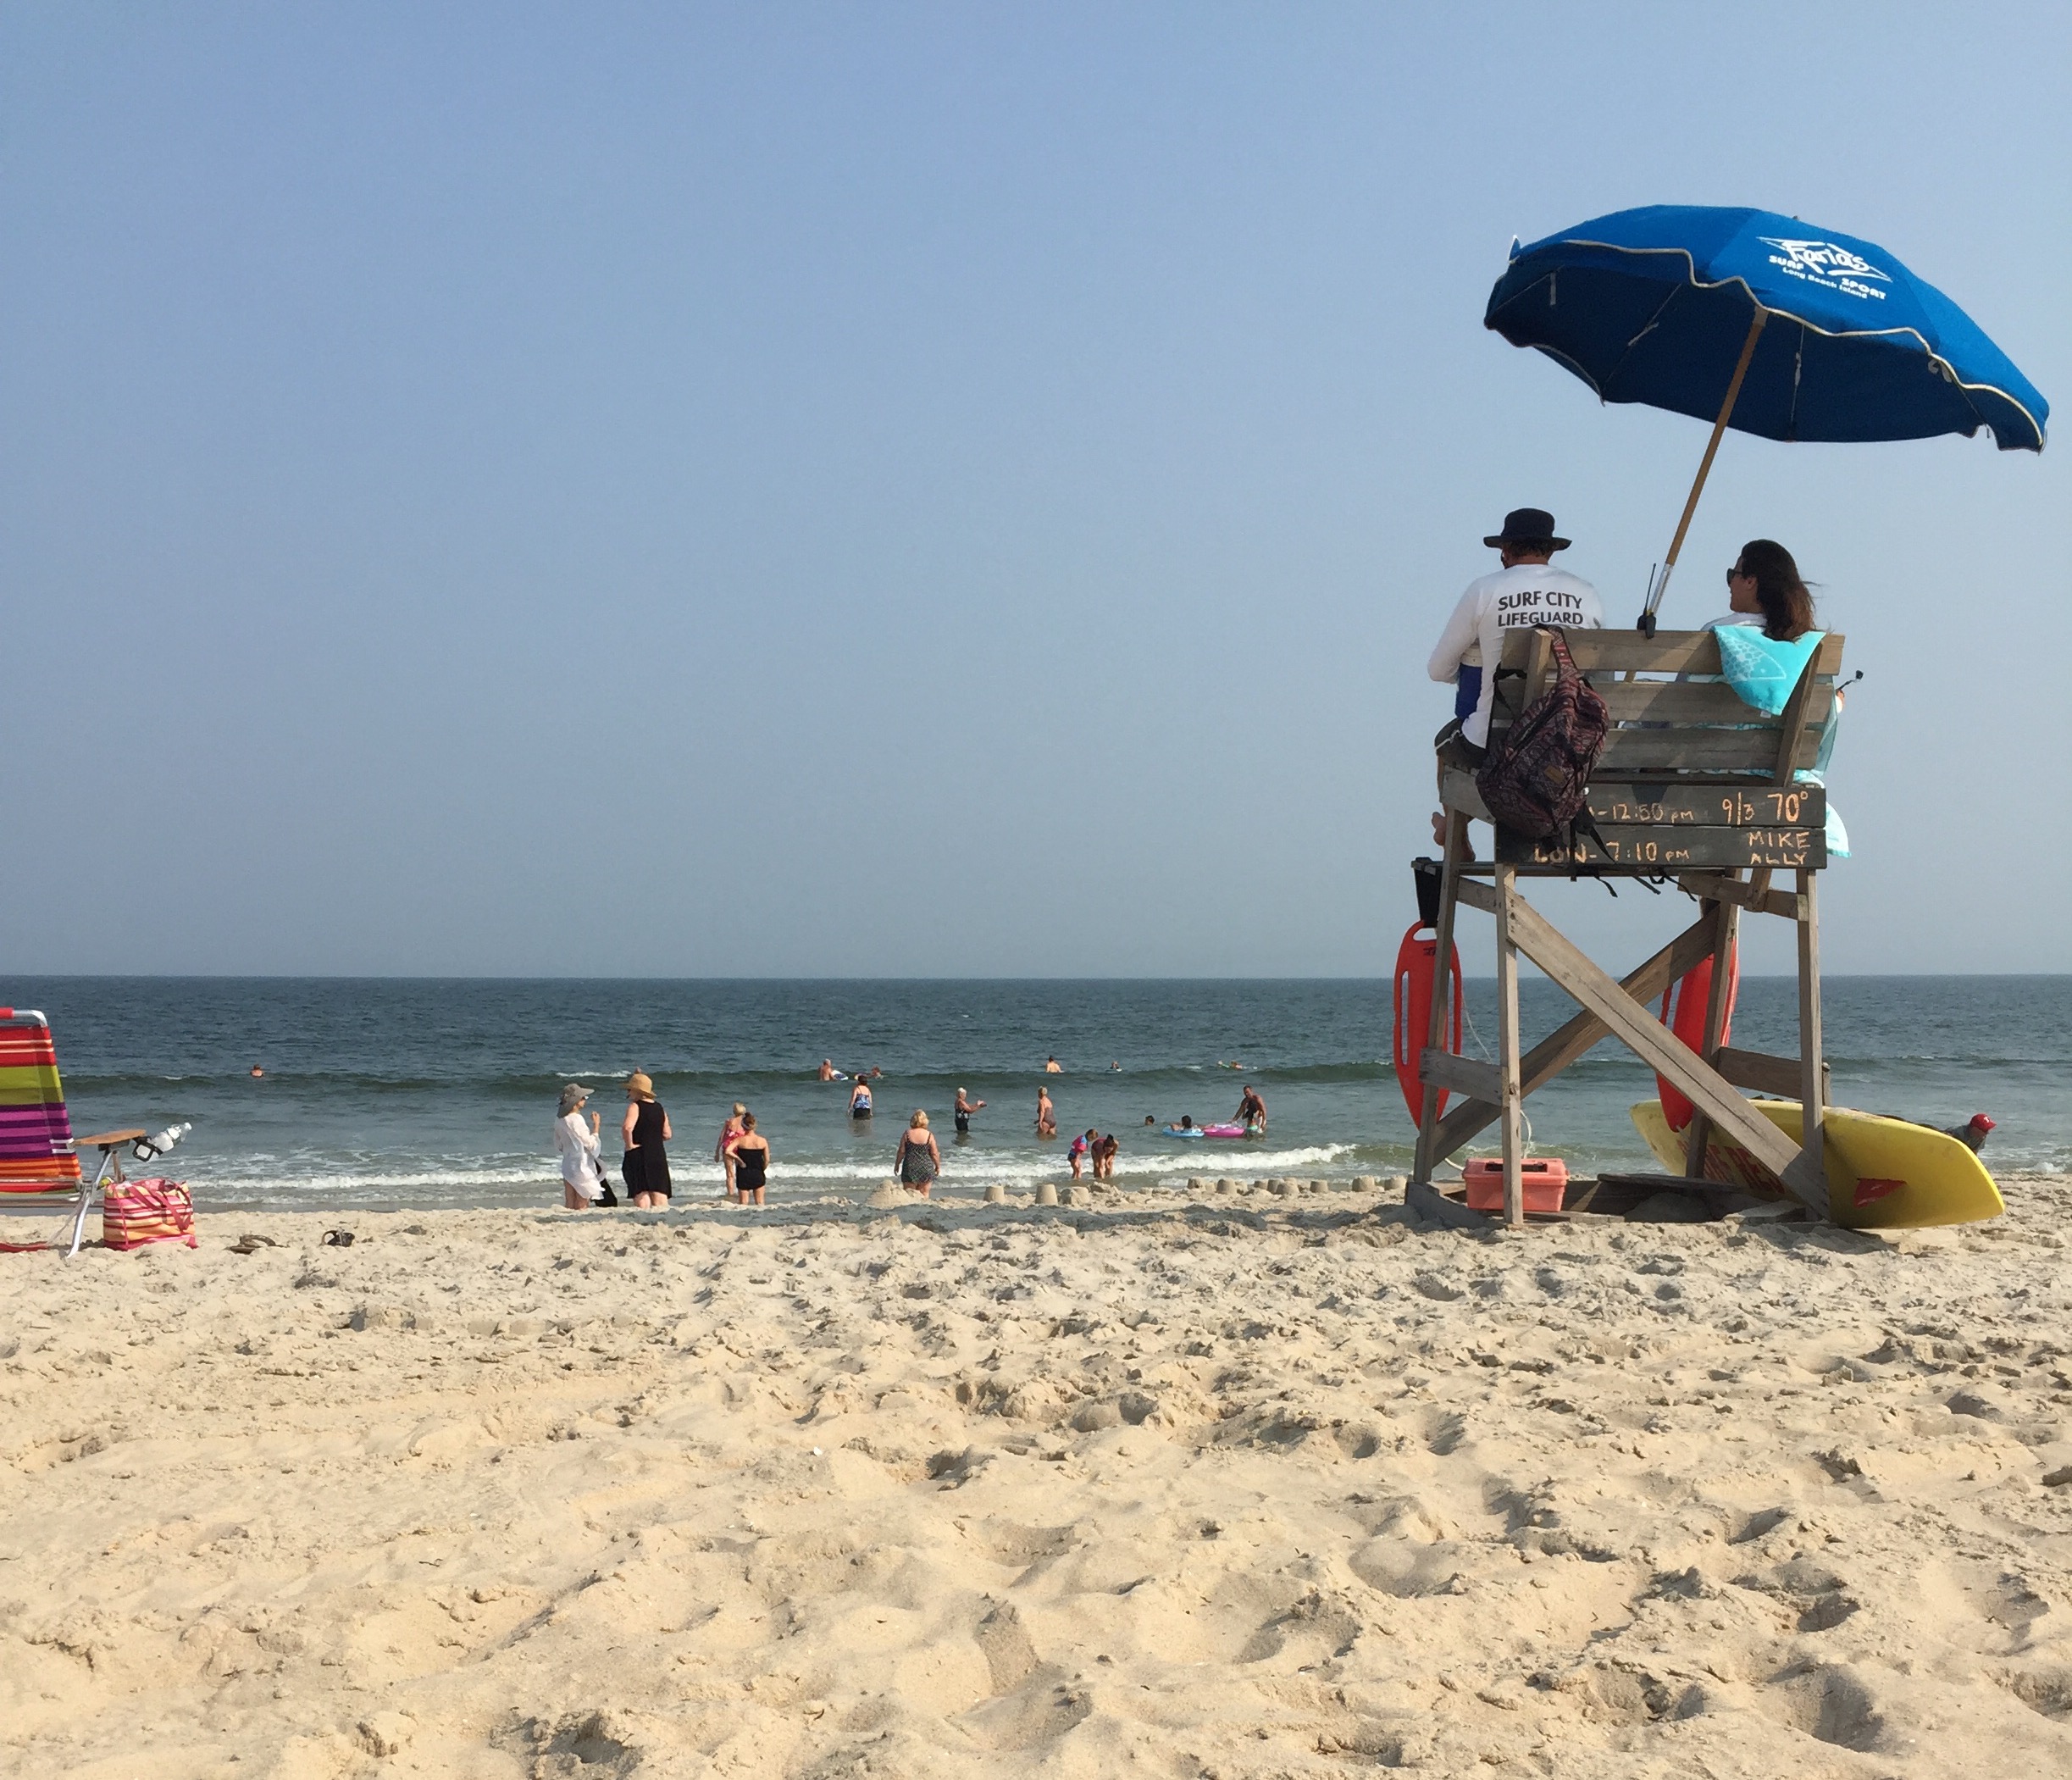 Lifeguards keep watch over an Ocean County beach, Sept. 3, 2015. (Photo: Daniel Nee)